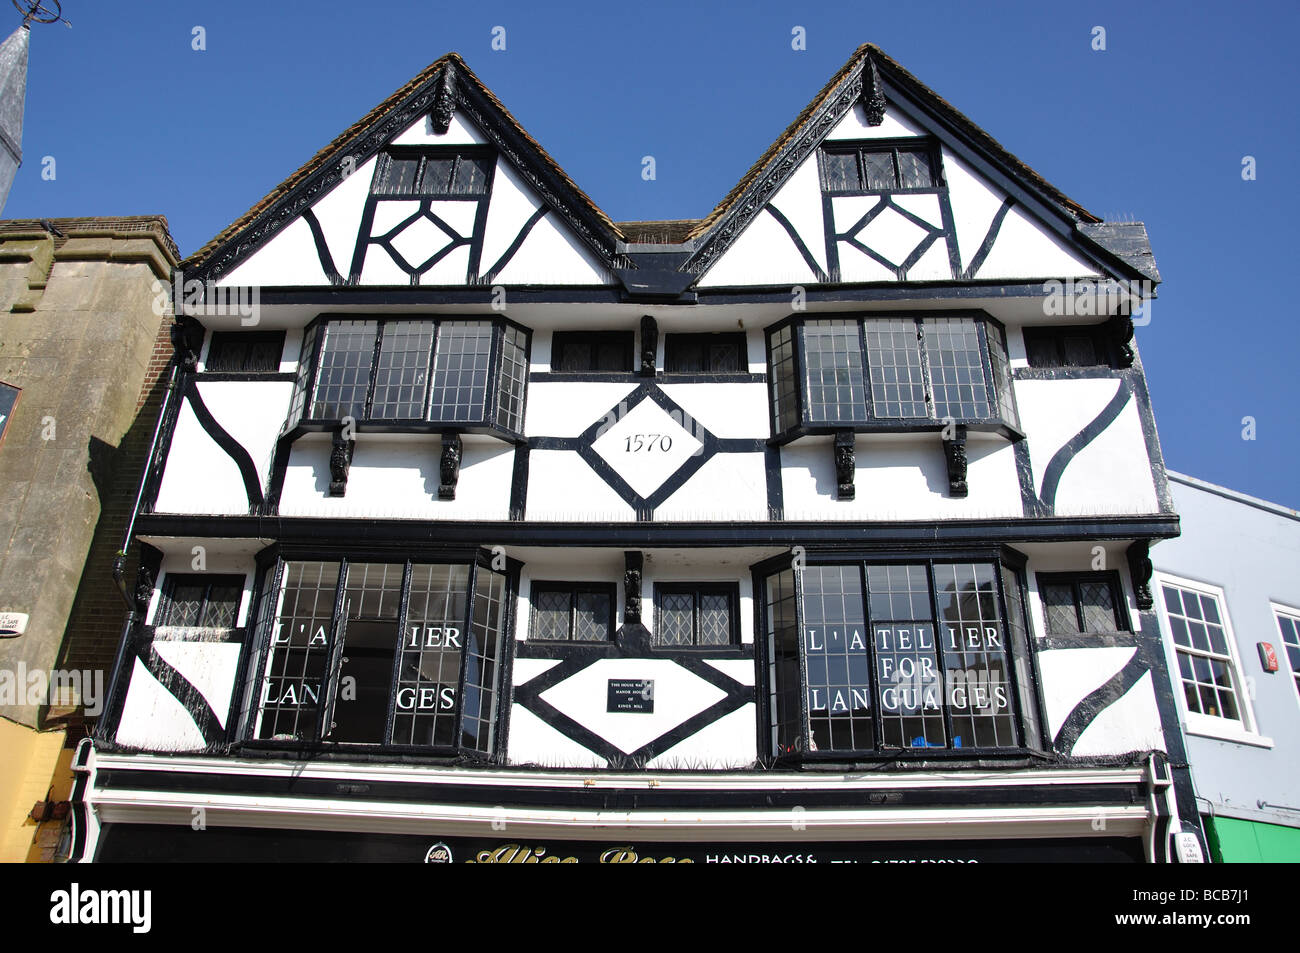 Bâtiment Tudor à colombages, Place du marché, Faversham, Kent, Angleterre, Royaume-Uni Banque D'Images